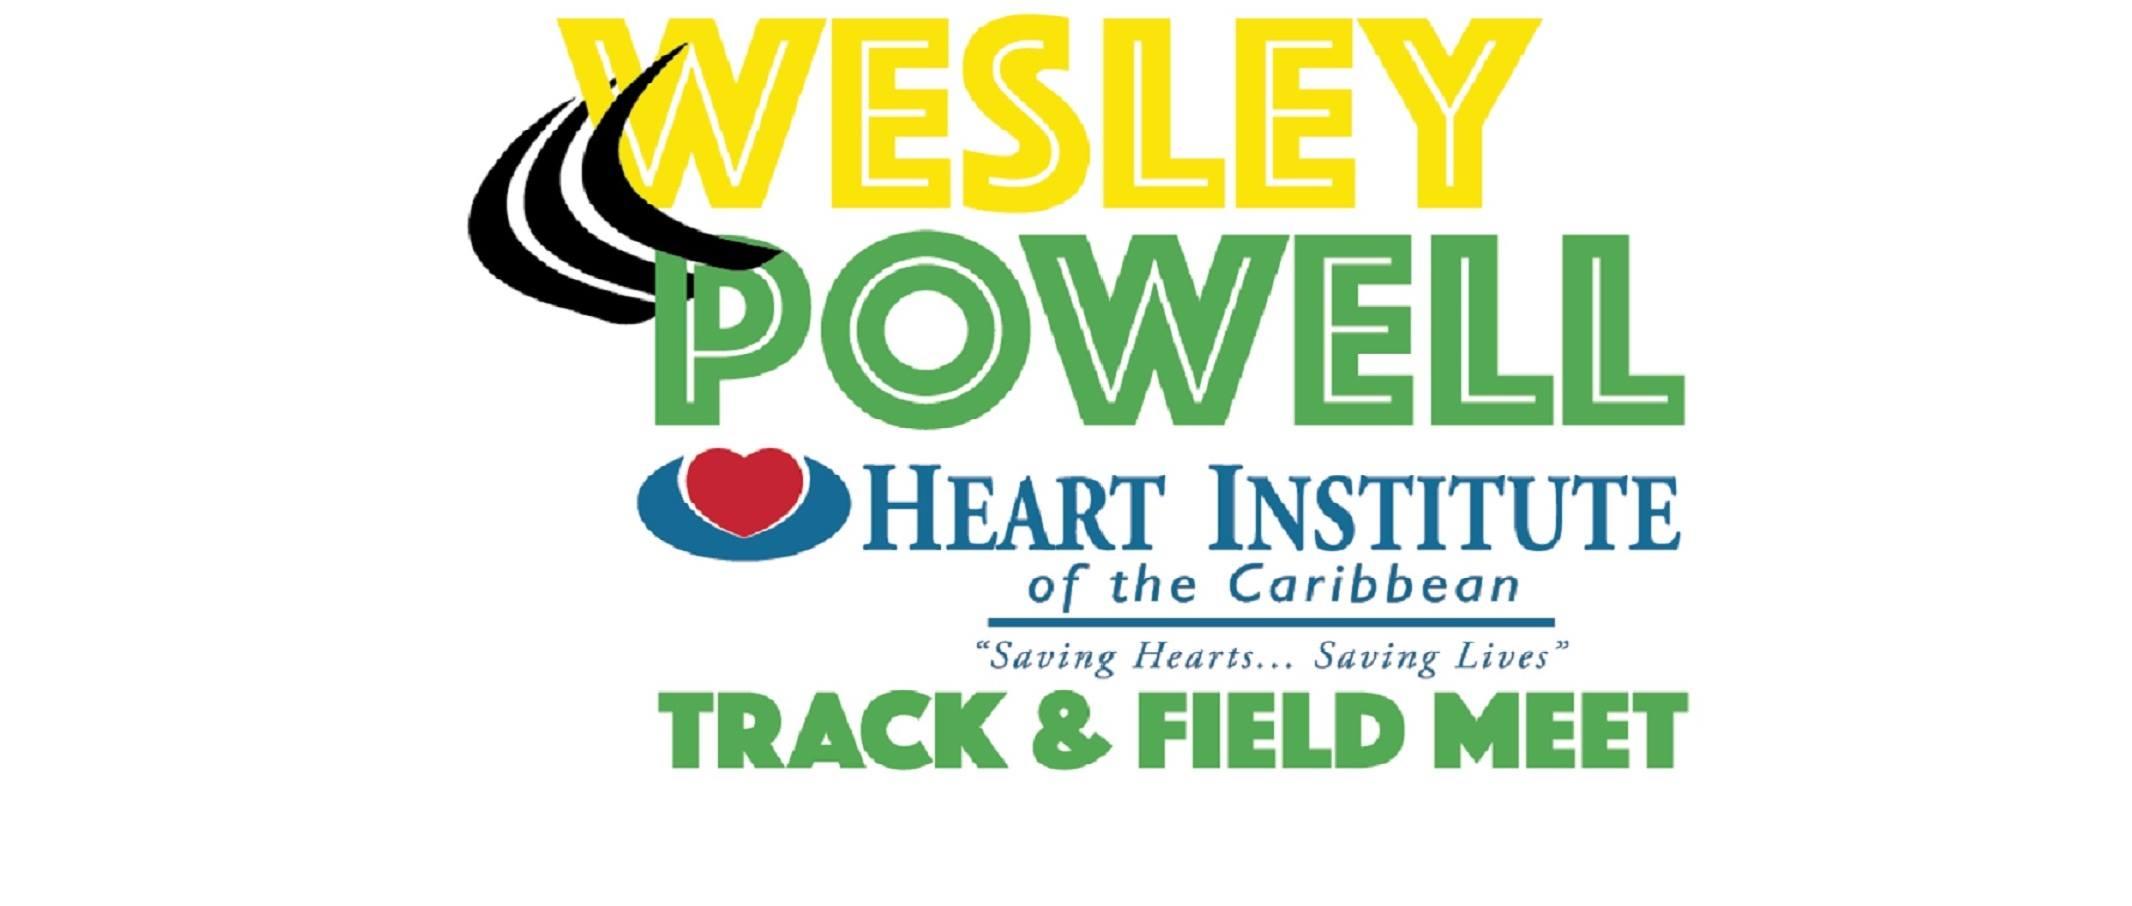 Heart Institute: Track & Field Meet